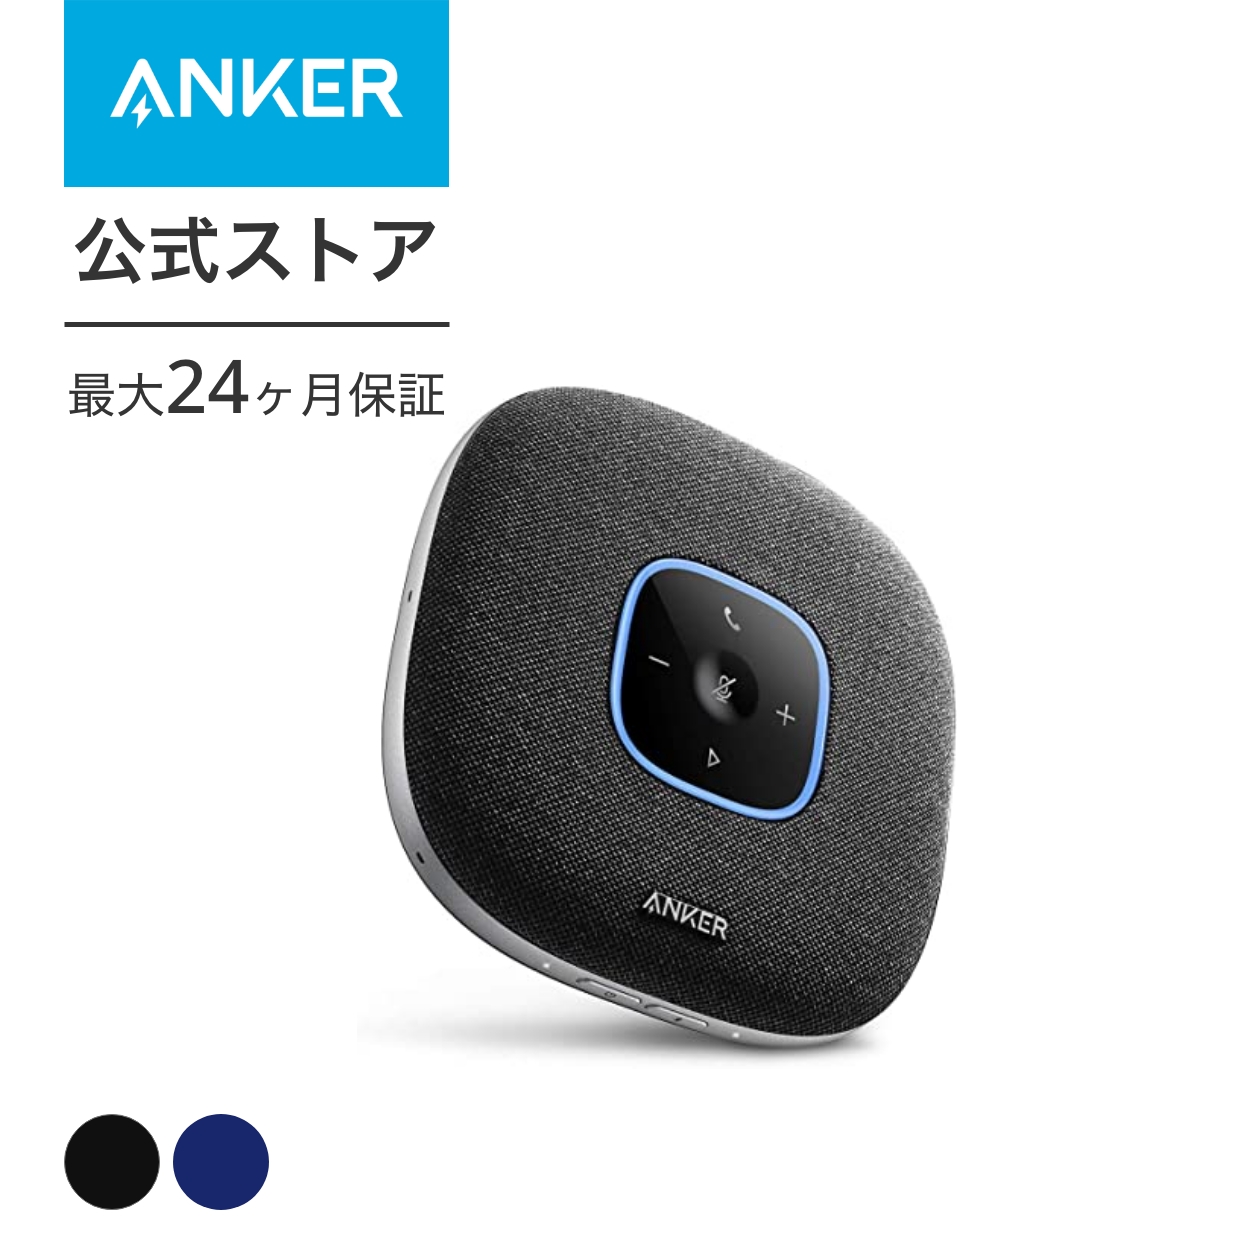 【楽天市場】Anker PowerConf S3 スピーカーフォン 会議用 マイク Bluetooth 対応 Skype Zoom など対応